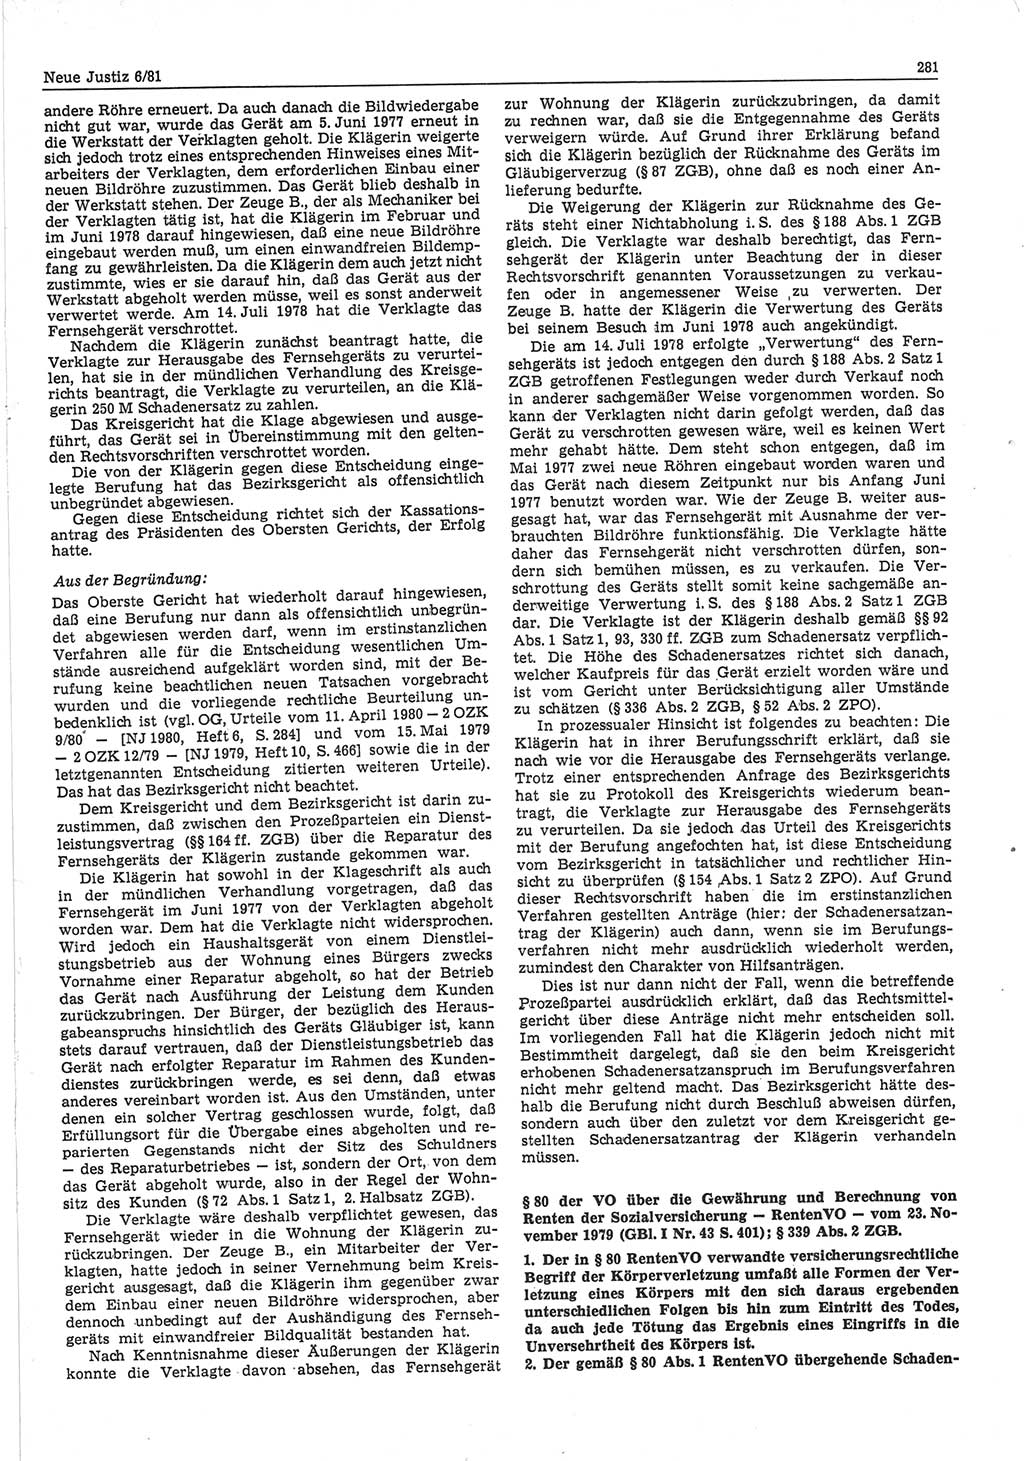 Neue Justiz (NJ), Zeitschrift für sozialistisches Recht und Gesetzlichkeit [Deutsche Demokratische Republik (DDR)], 35. Jahrgang 1981, Seite 281 (NJ DDR 1981, S. 281)